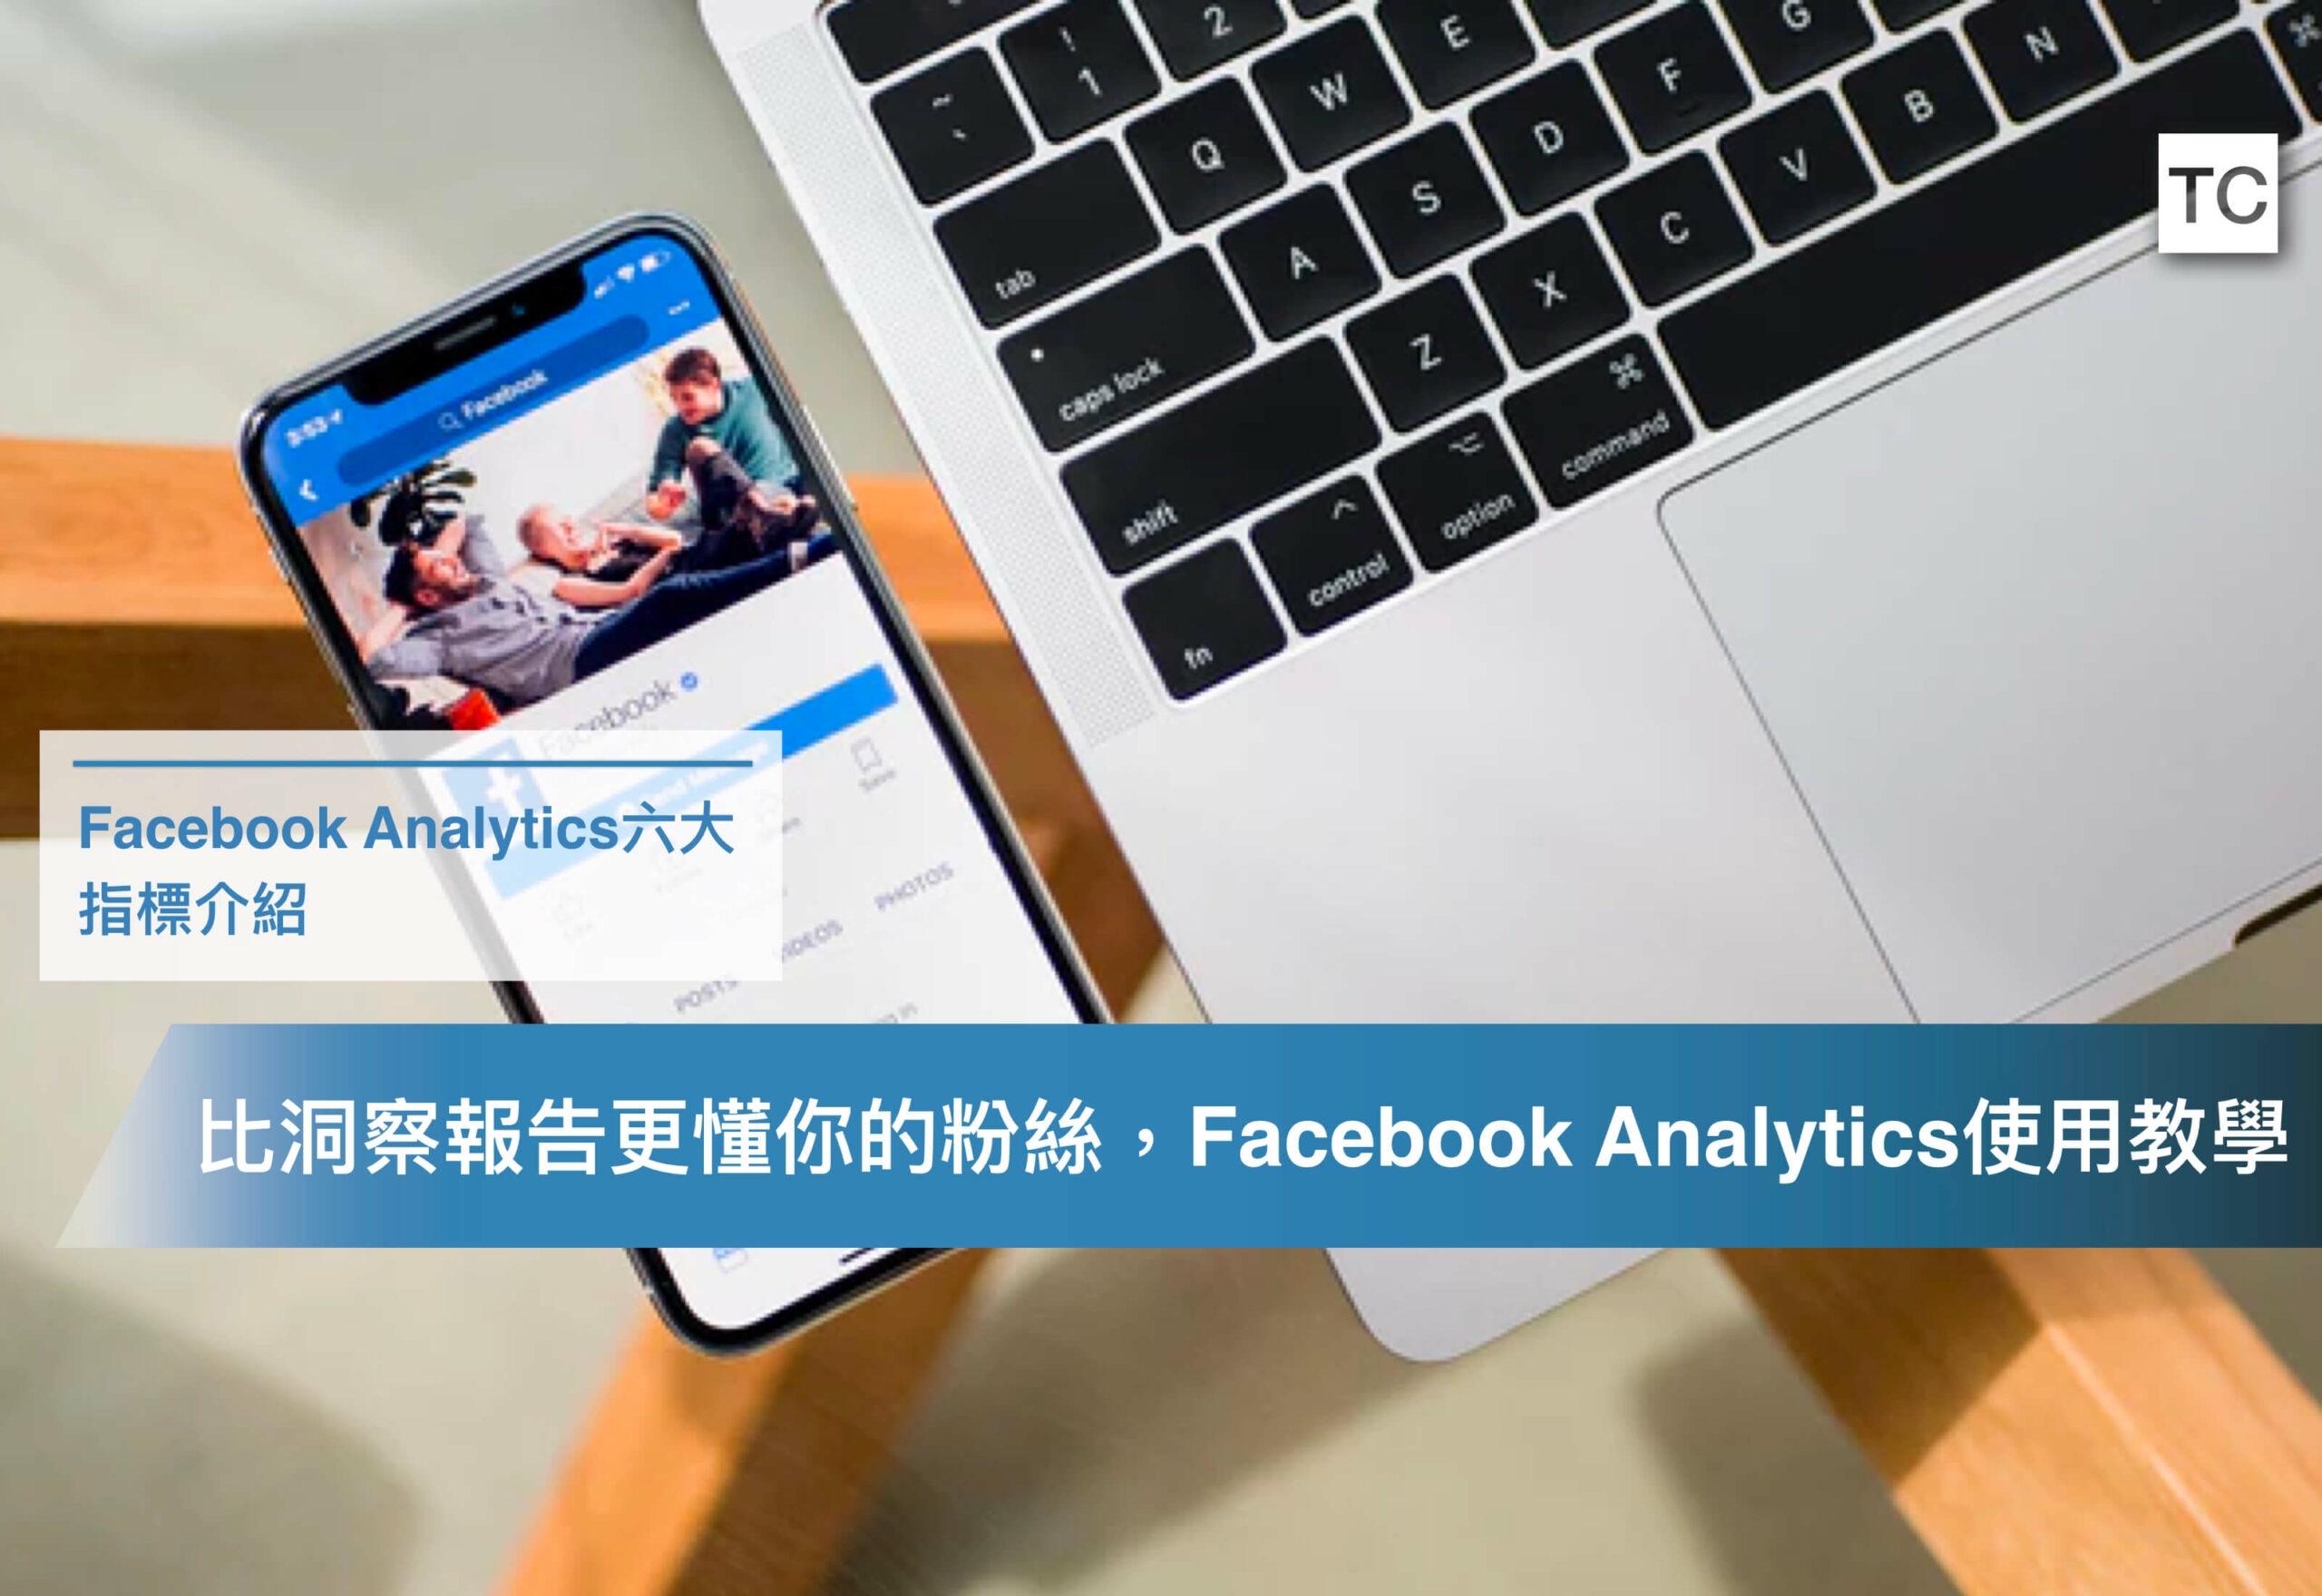 粉絲專頁經營分析必備工具-Facebook Analytics使用教學